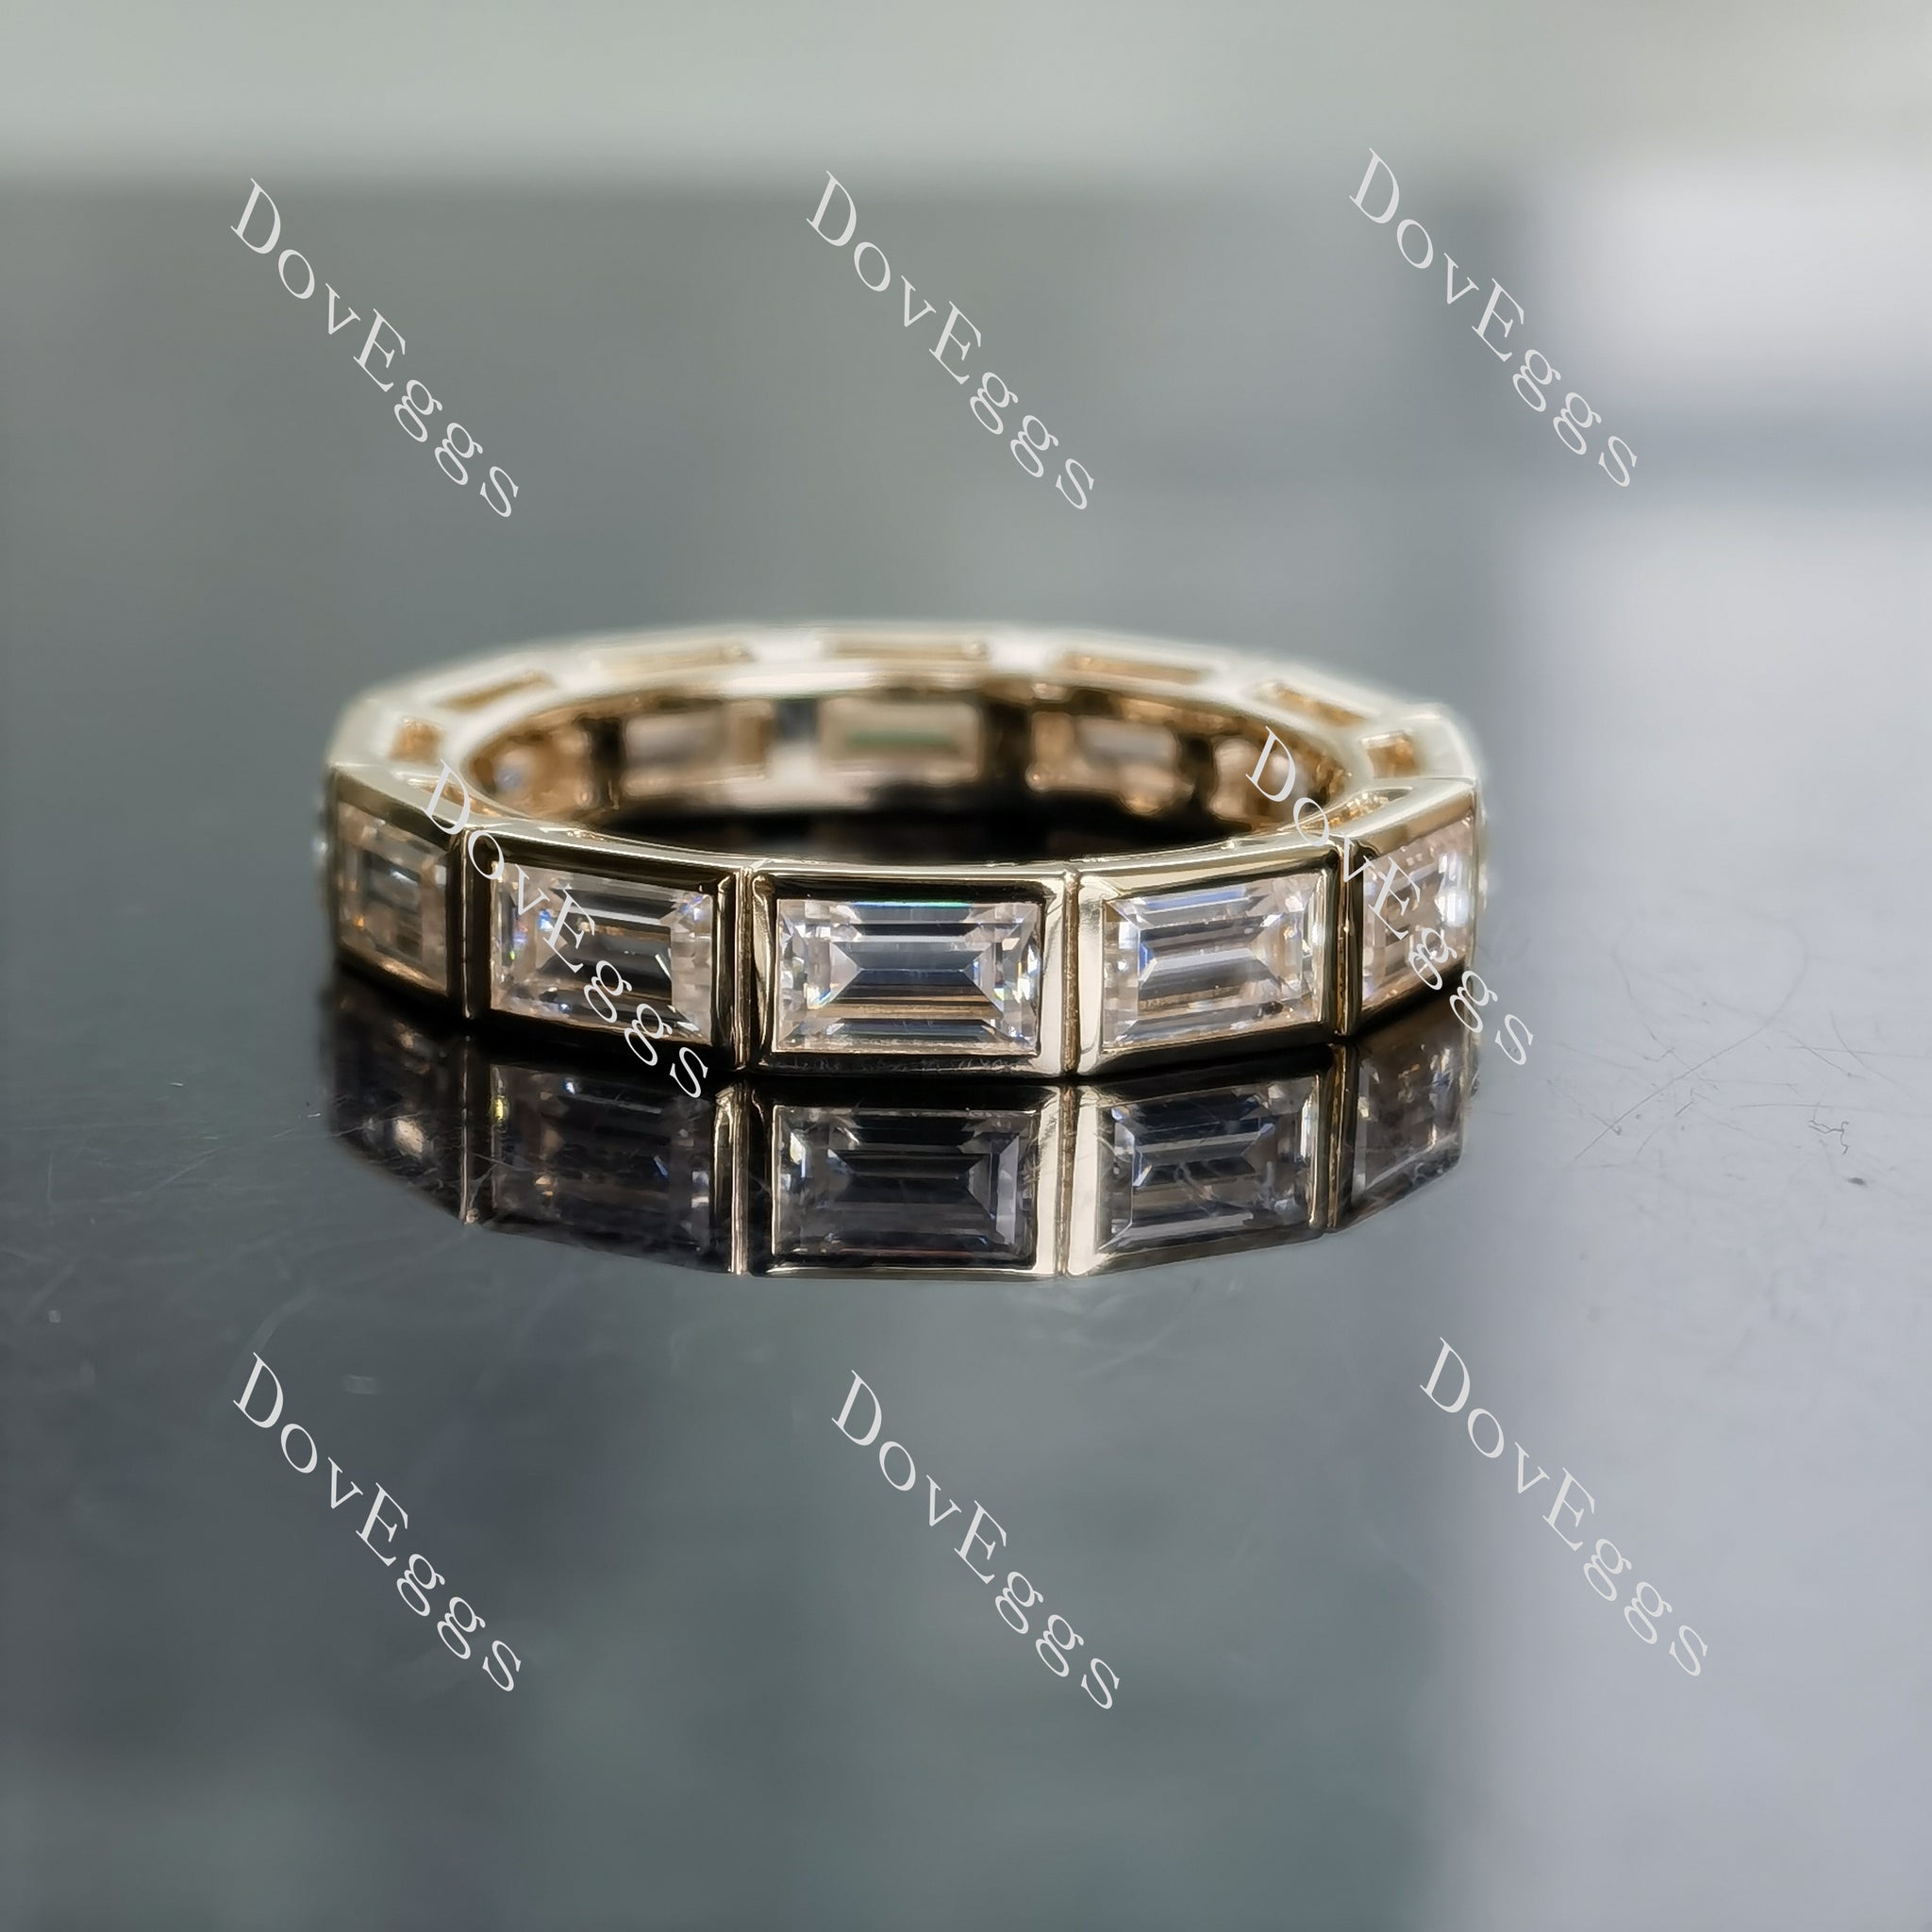 Doveggs emerald full eternity bezel moissanite wedding band-4.0mm band width